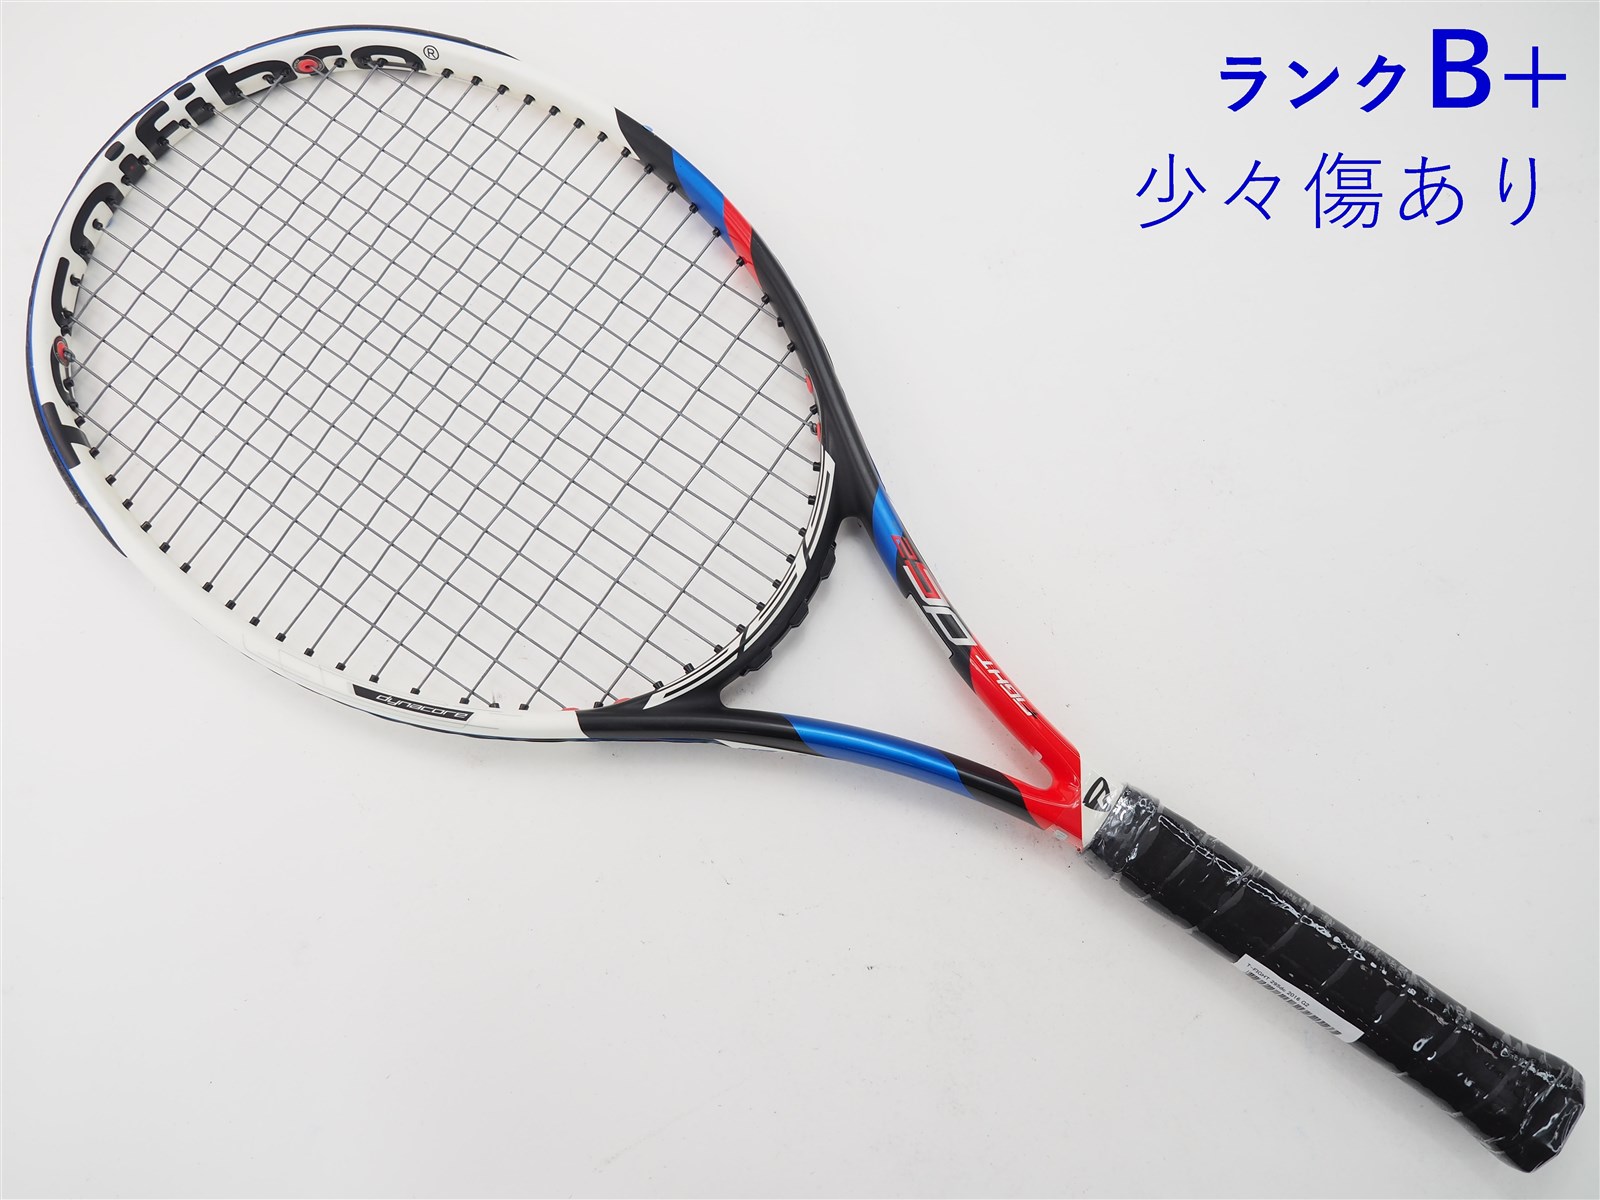 テクニファイバー t-fight 300 dc3 テニスラケット - ラケット(硬式用)